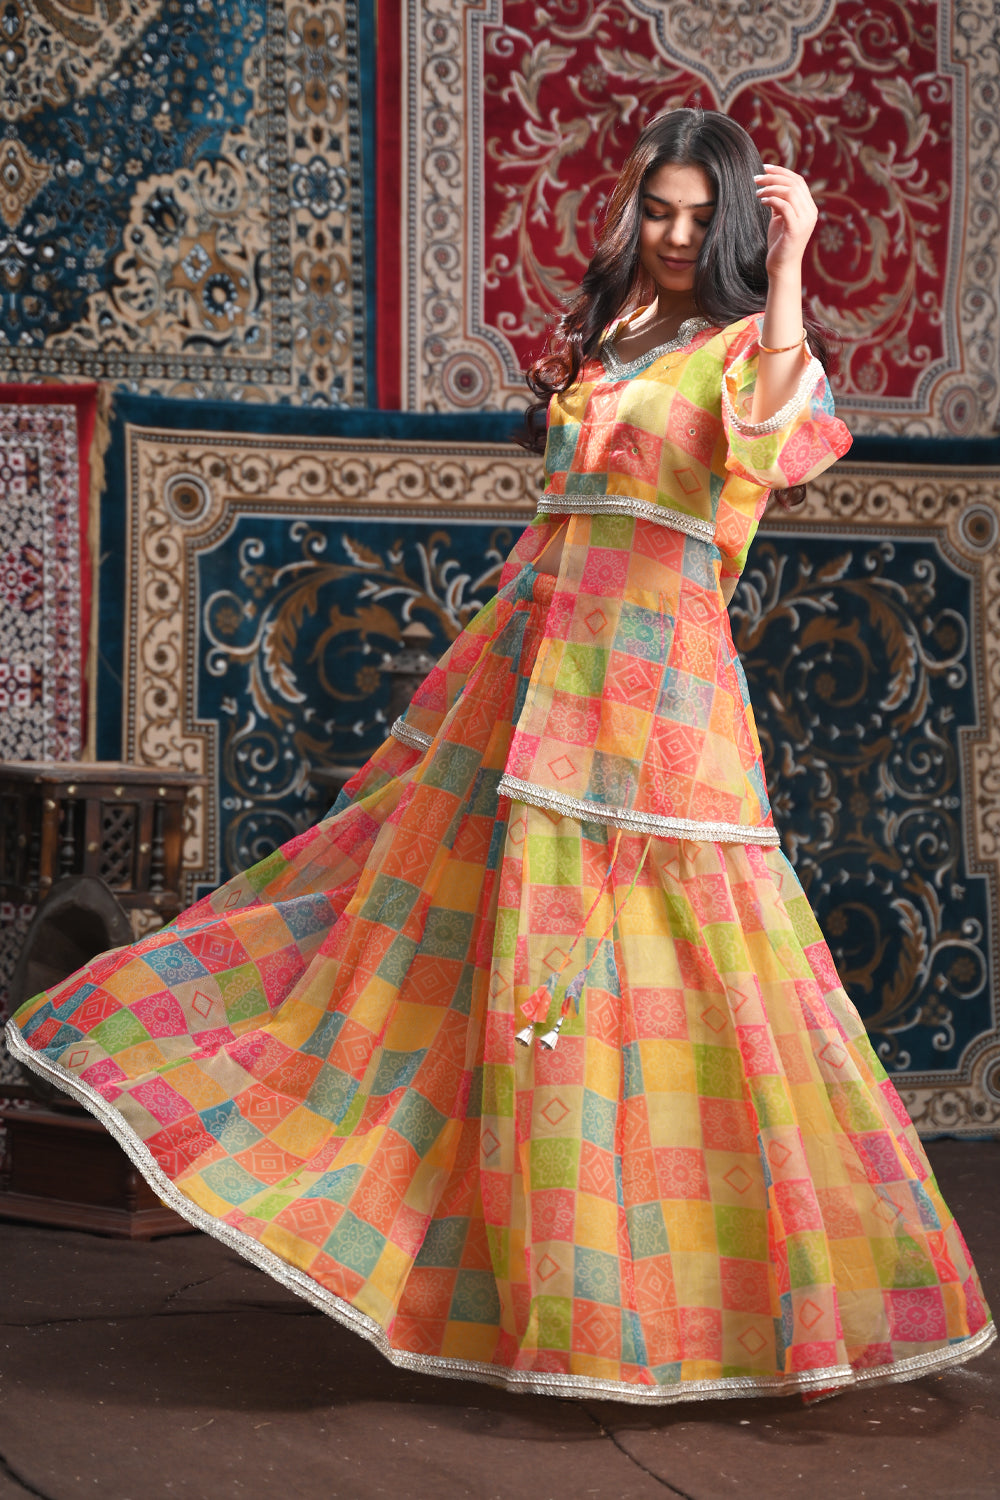 Designer Narayan Pet Cotton Half Saree Zari Weaving Work Lehenga South  Indian Wedding Woman Sari Blouse, Lehenga Indian Wedding Skirt Gifts - Etsy  Finland